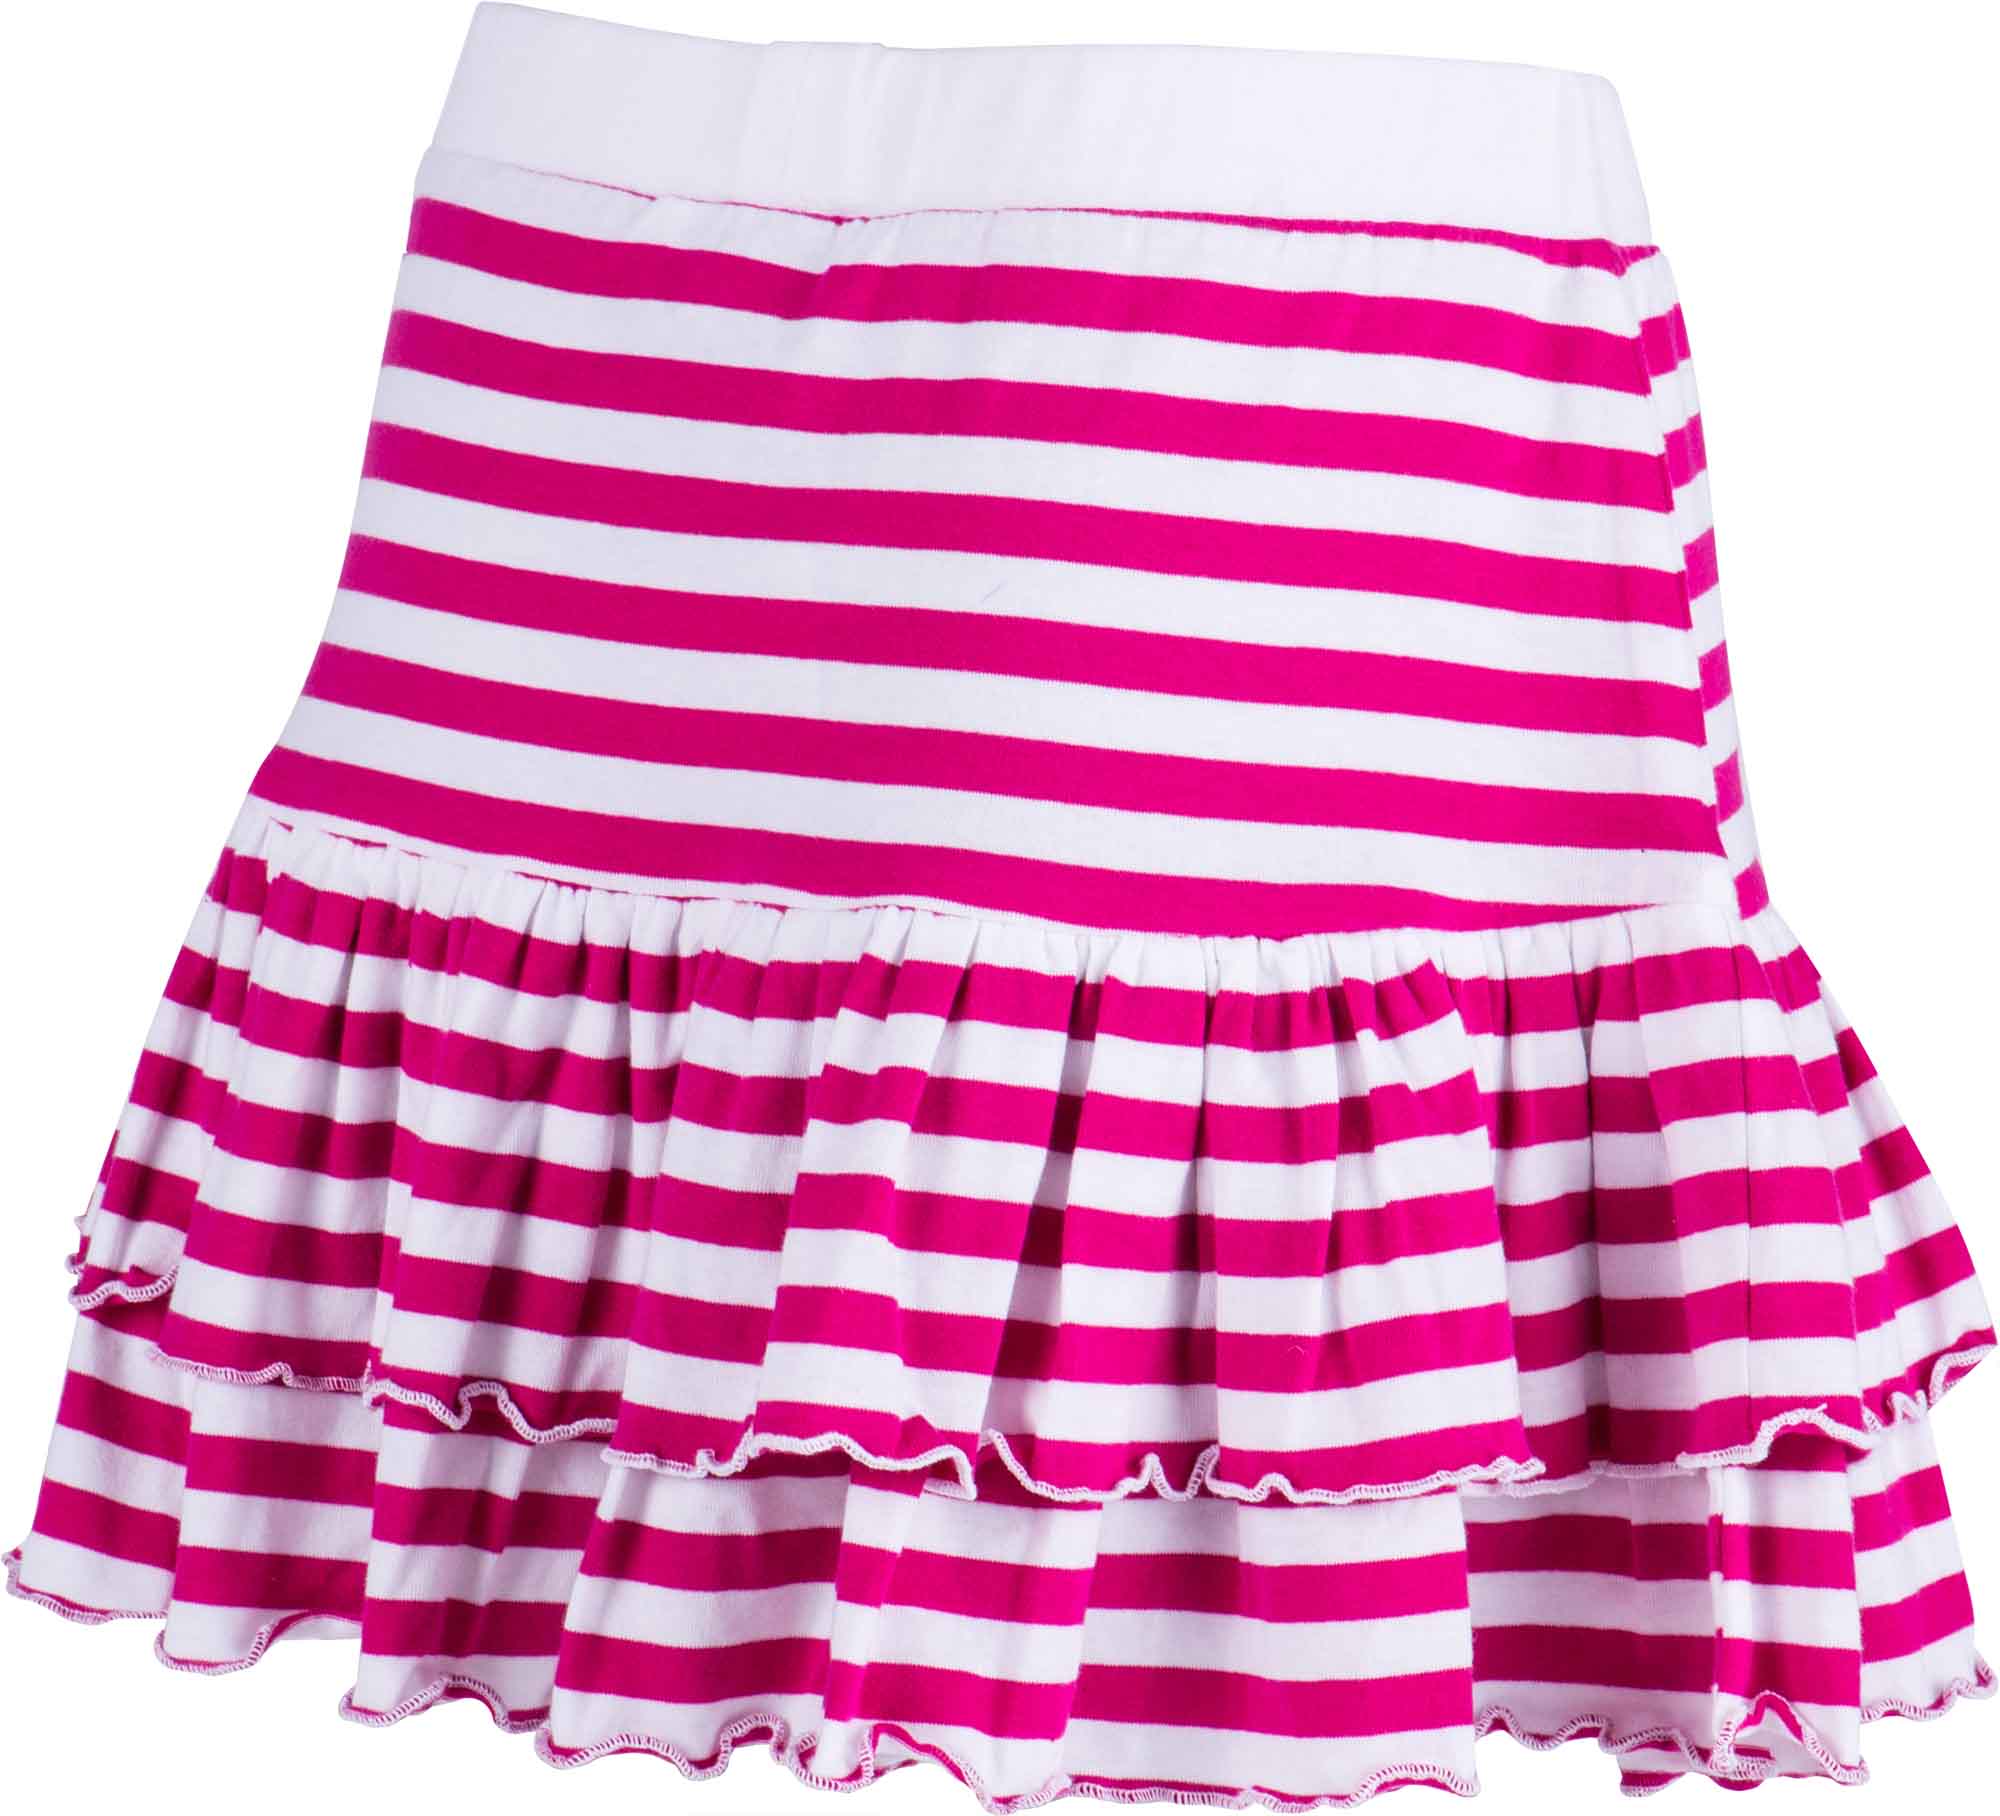 Girls’ skirt with ruffles